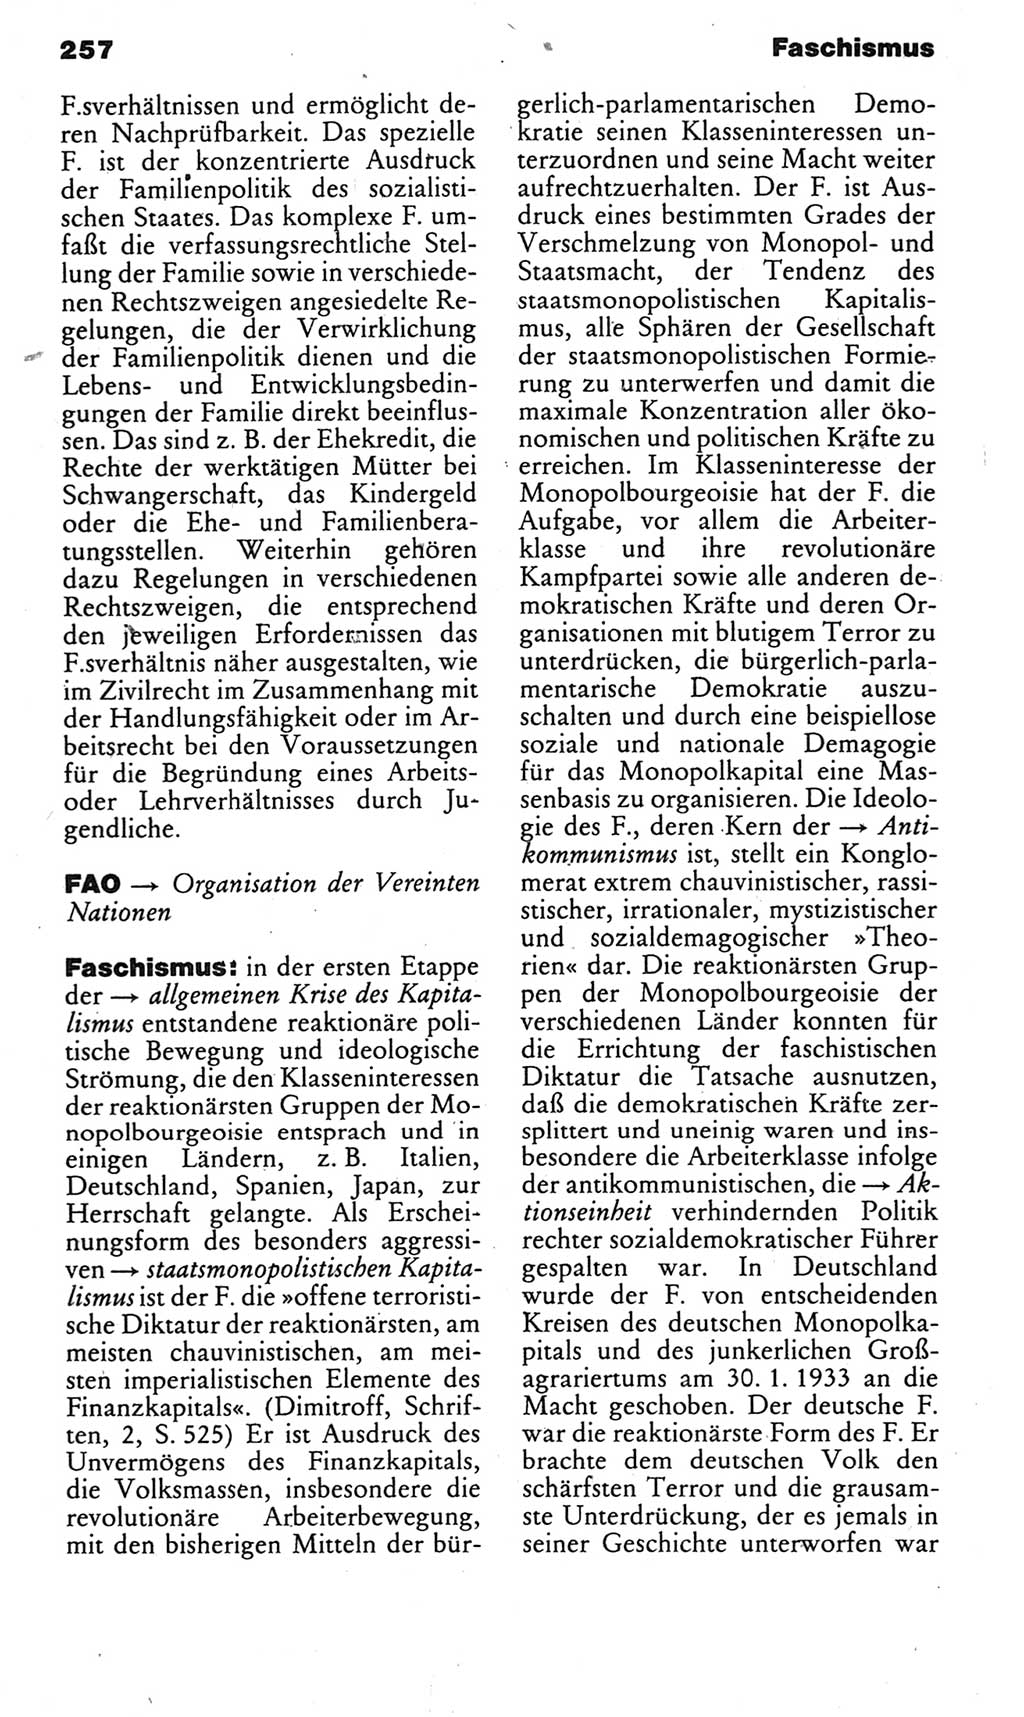 Kleines politisches Wörterbuch [Deutsche Demokratische Republik (DDR)] 1985, Seite 257 (Kl. pol. Wb. DDR 1985, S. 257)